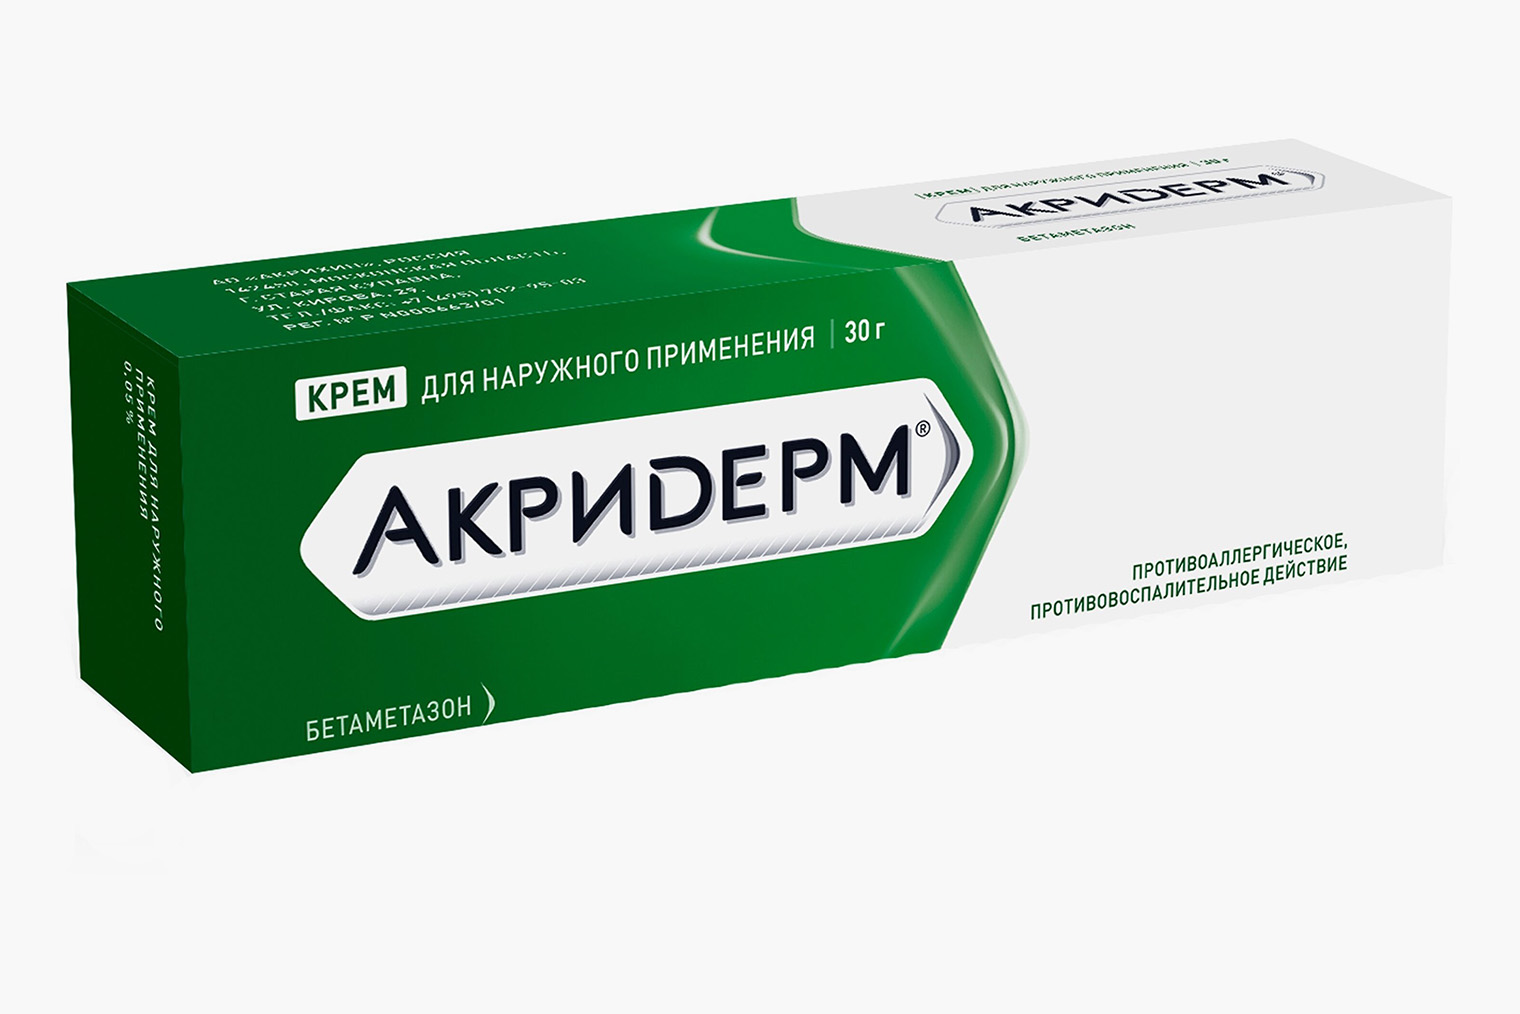 Цена за 15 граммов популярного препарата с бетаметазоном «Акридерм» начинается от 69 ₽, цена за менее популярный дженерик «Целестодерм» — от 47 ₽